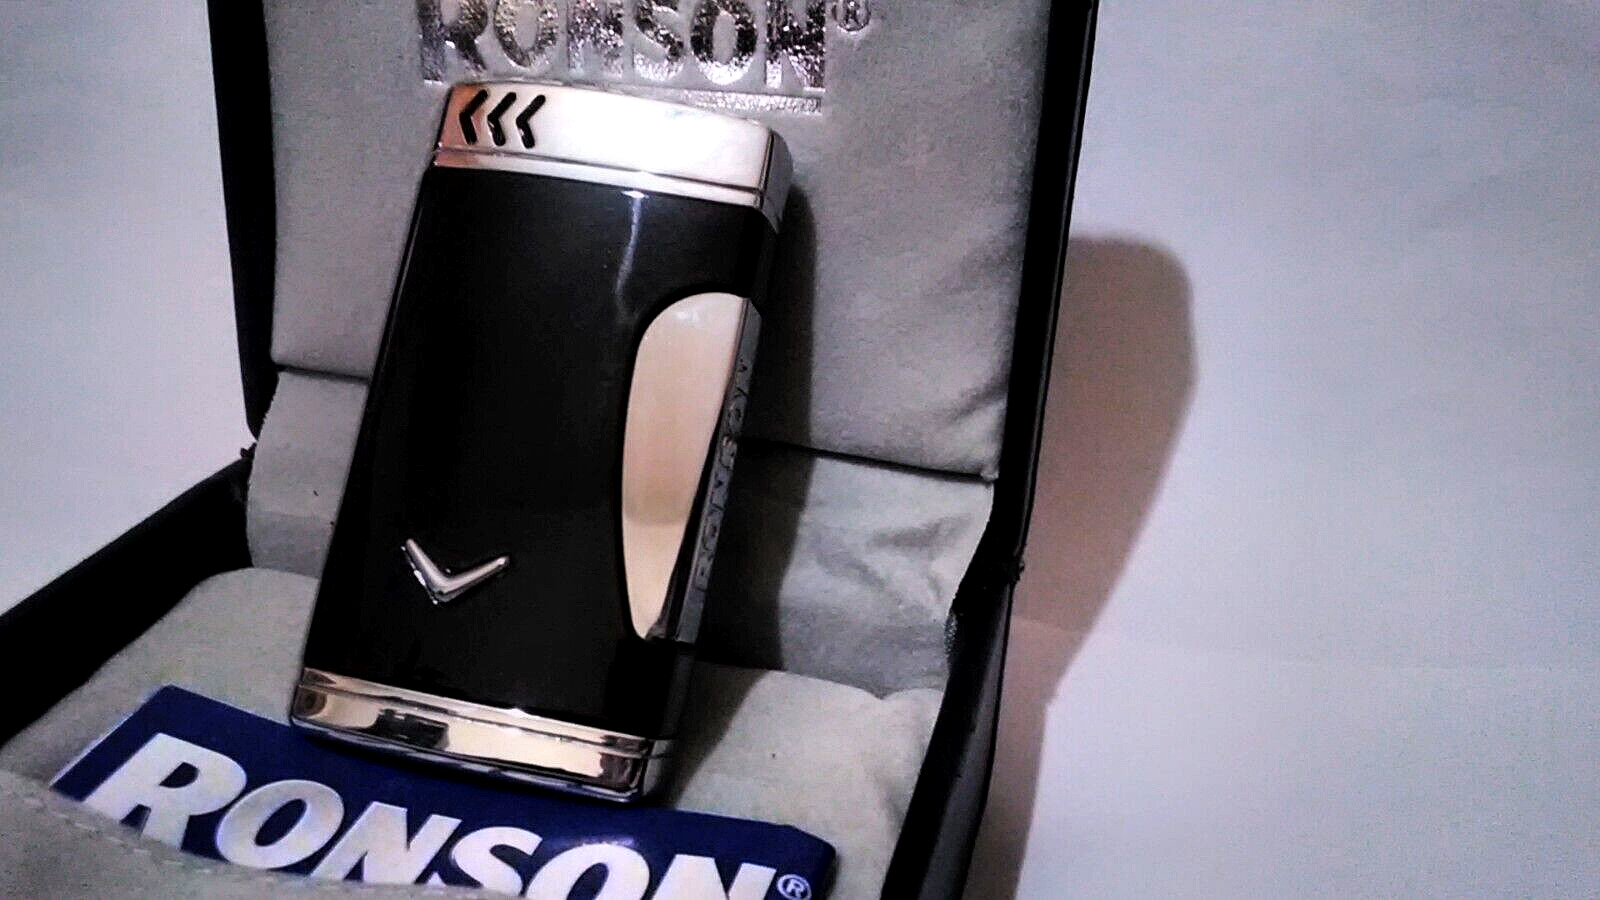 Ronson Premier Super Comet Black Gloss Lighter New In Box